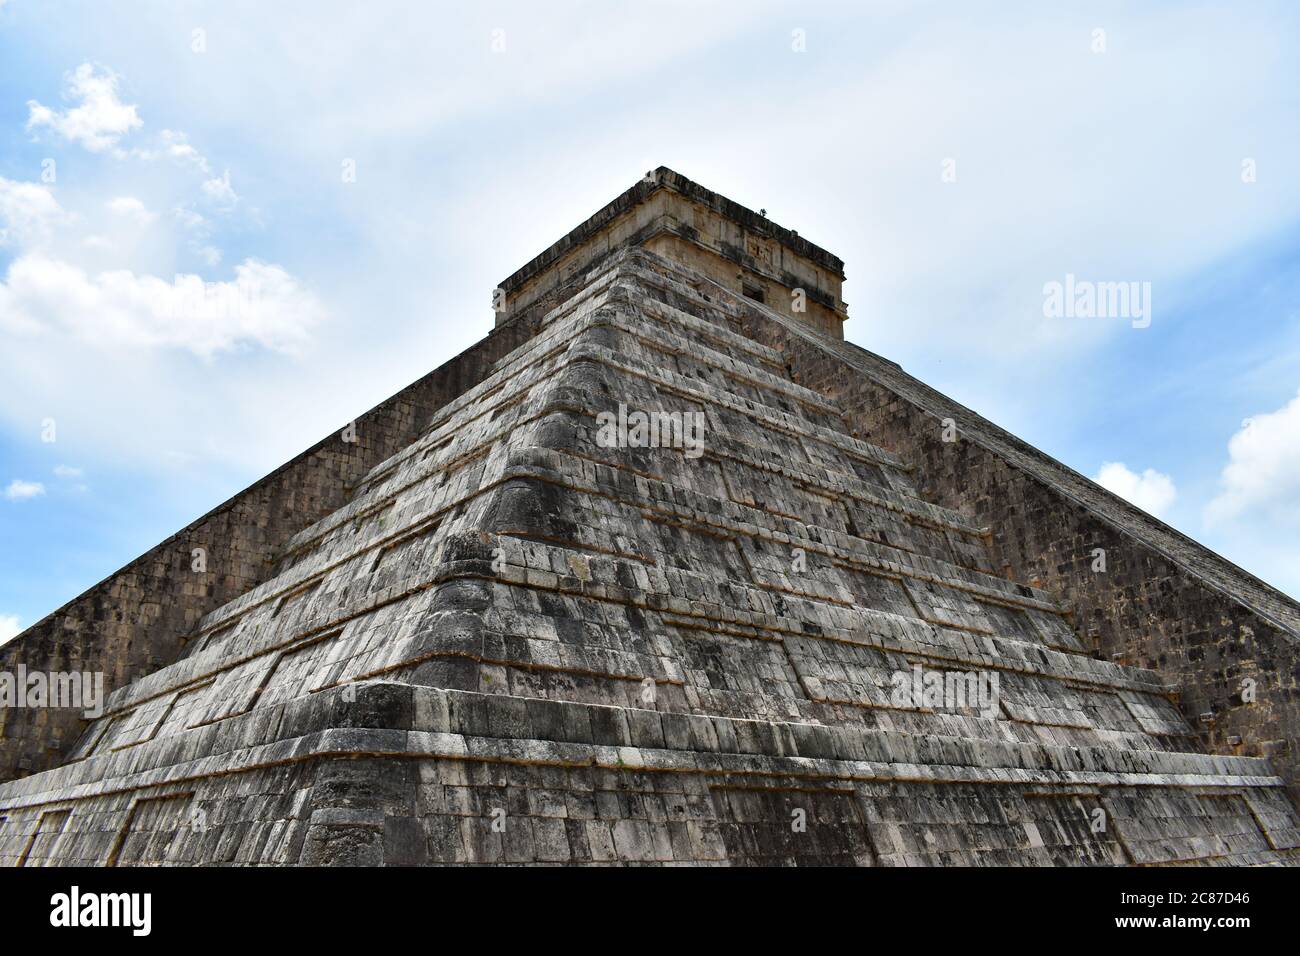 Tempel von Kukulkan in Chichen Itzá in der alten Maya-Stadt in Mexiko. Blick nach oben auf den wolkigen Himmel von der Ecke der Pyramide Stockfoto